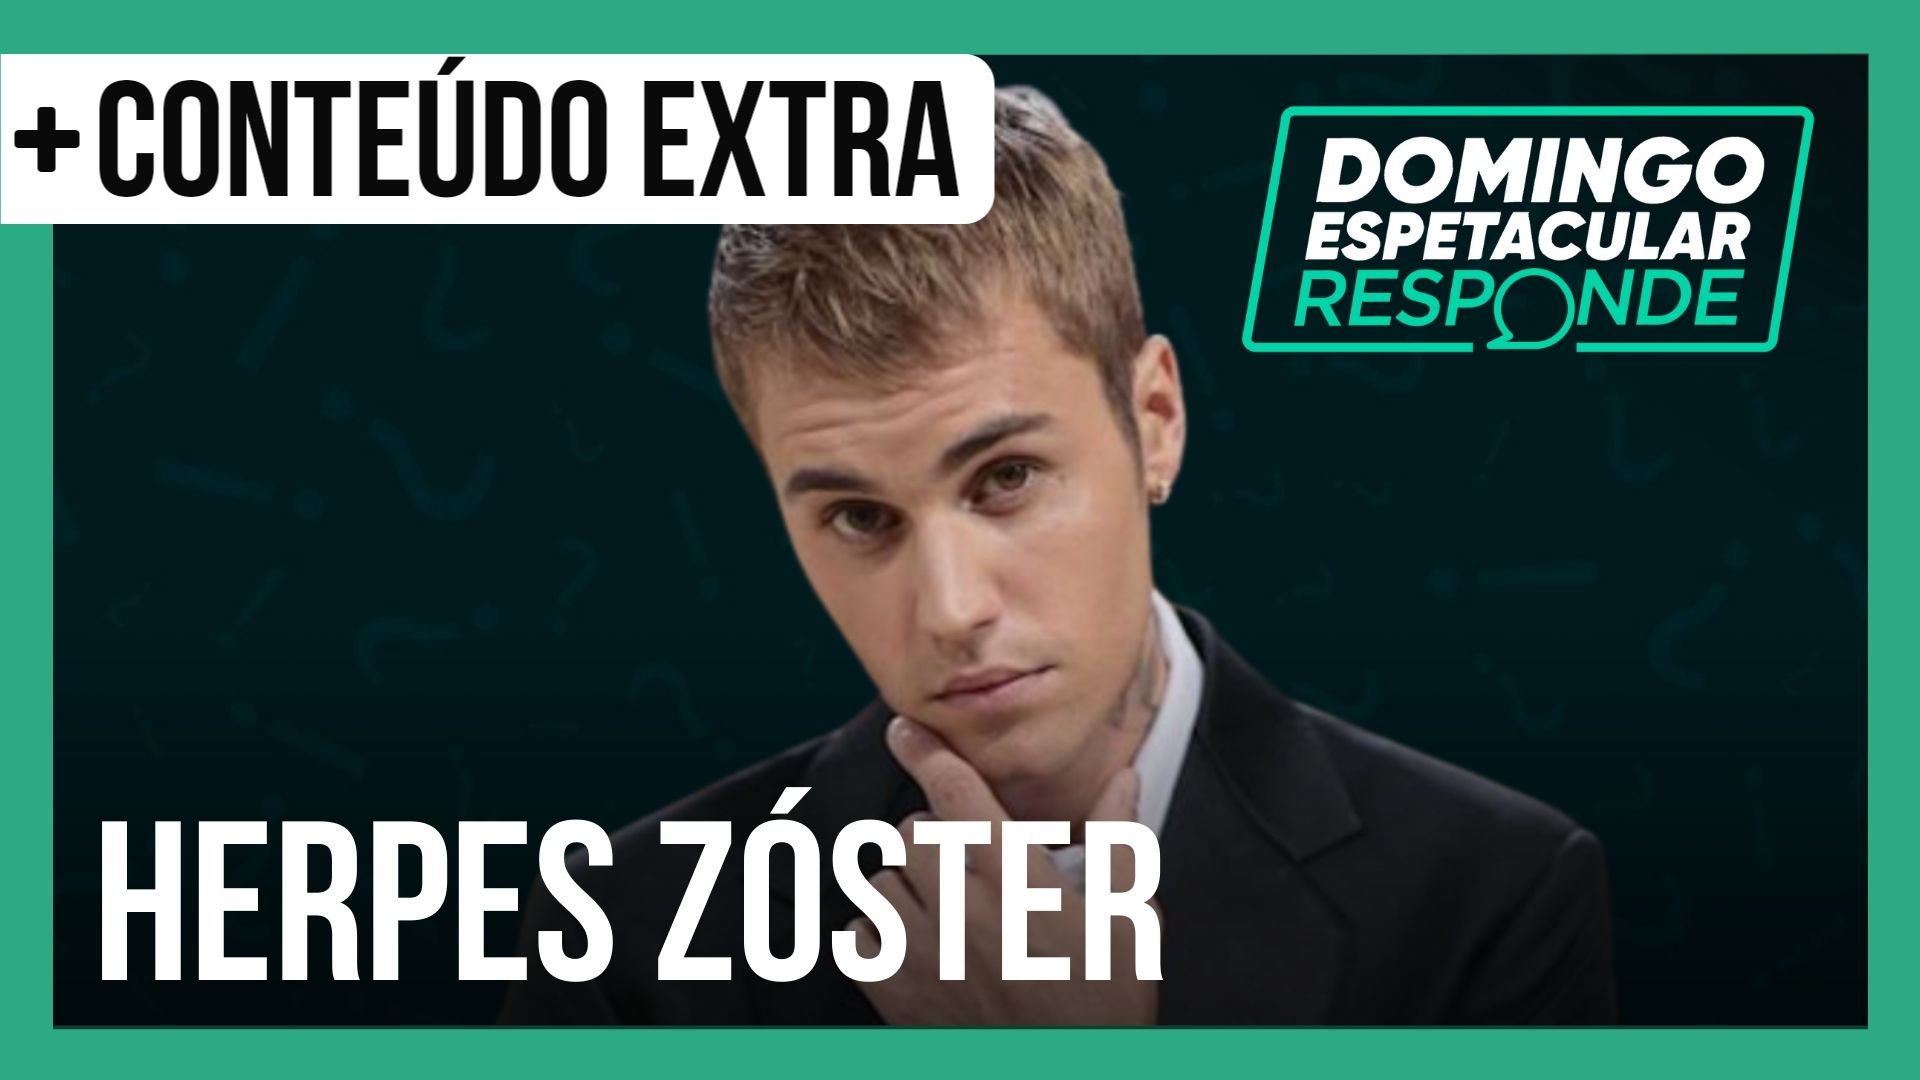 Vídeo: Justin Bieber com o rosto paralisado: saiba tudo sobre o herpes zóster | DE Responde